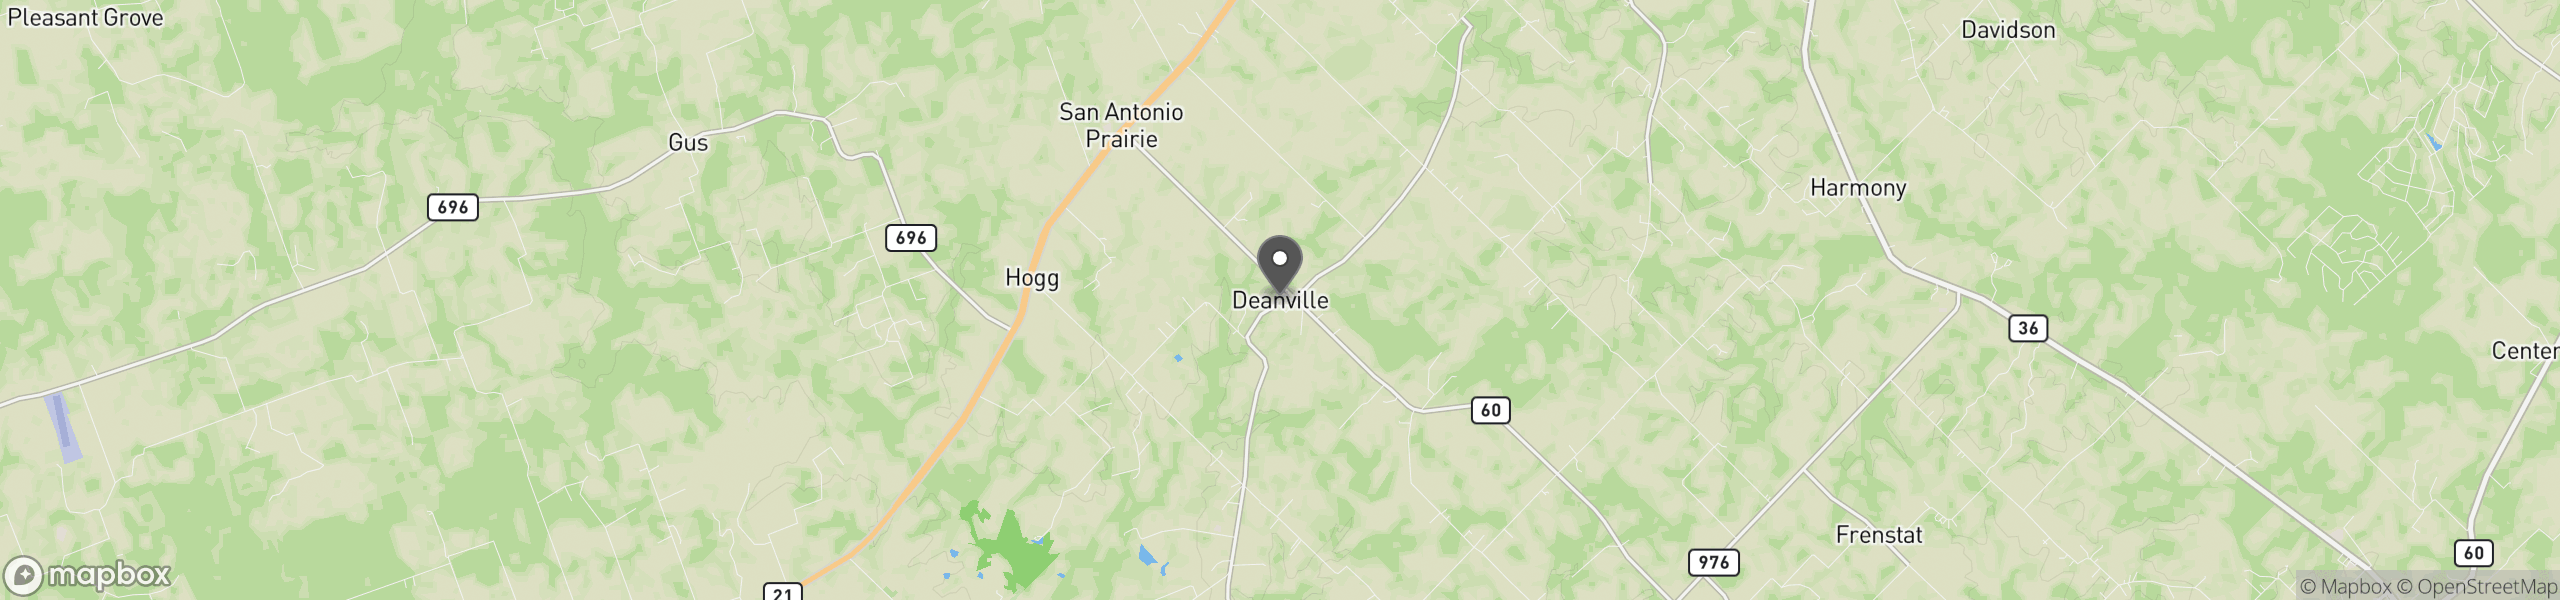 Deanville, TX 77852